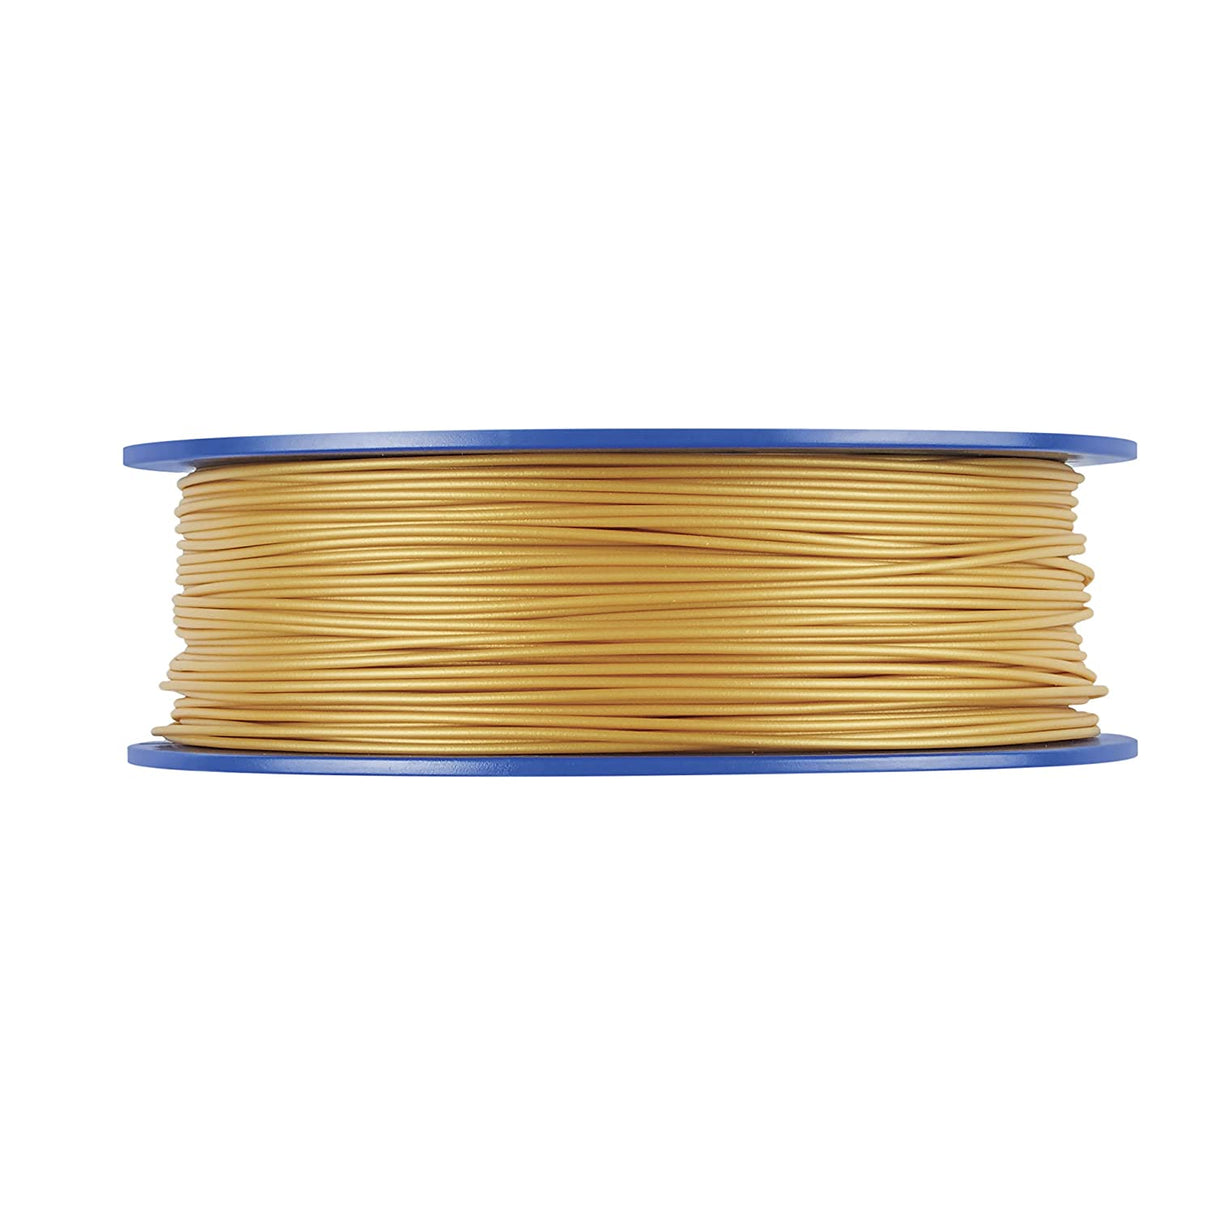 Dremel DigiLab PLA-GOL-01 3D Printer Filament, 1.75 mm Diameter, 0.75 kg Spool Weight, Color Gold, RFID Enabled, New Formula and 50 Percent More per Spool